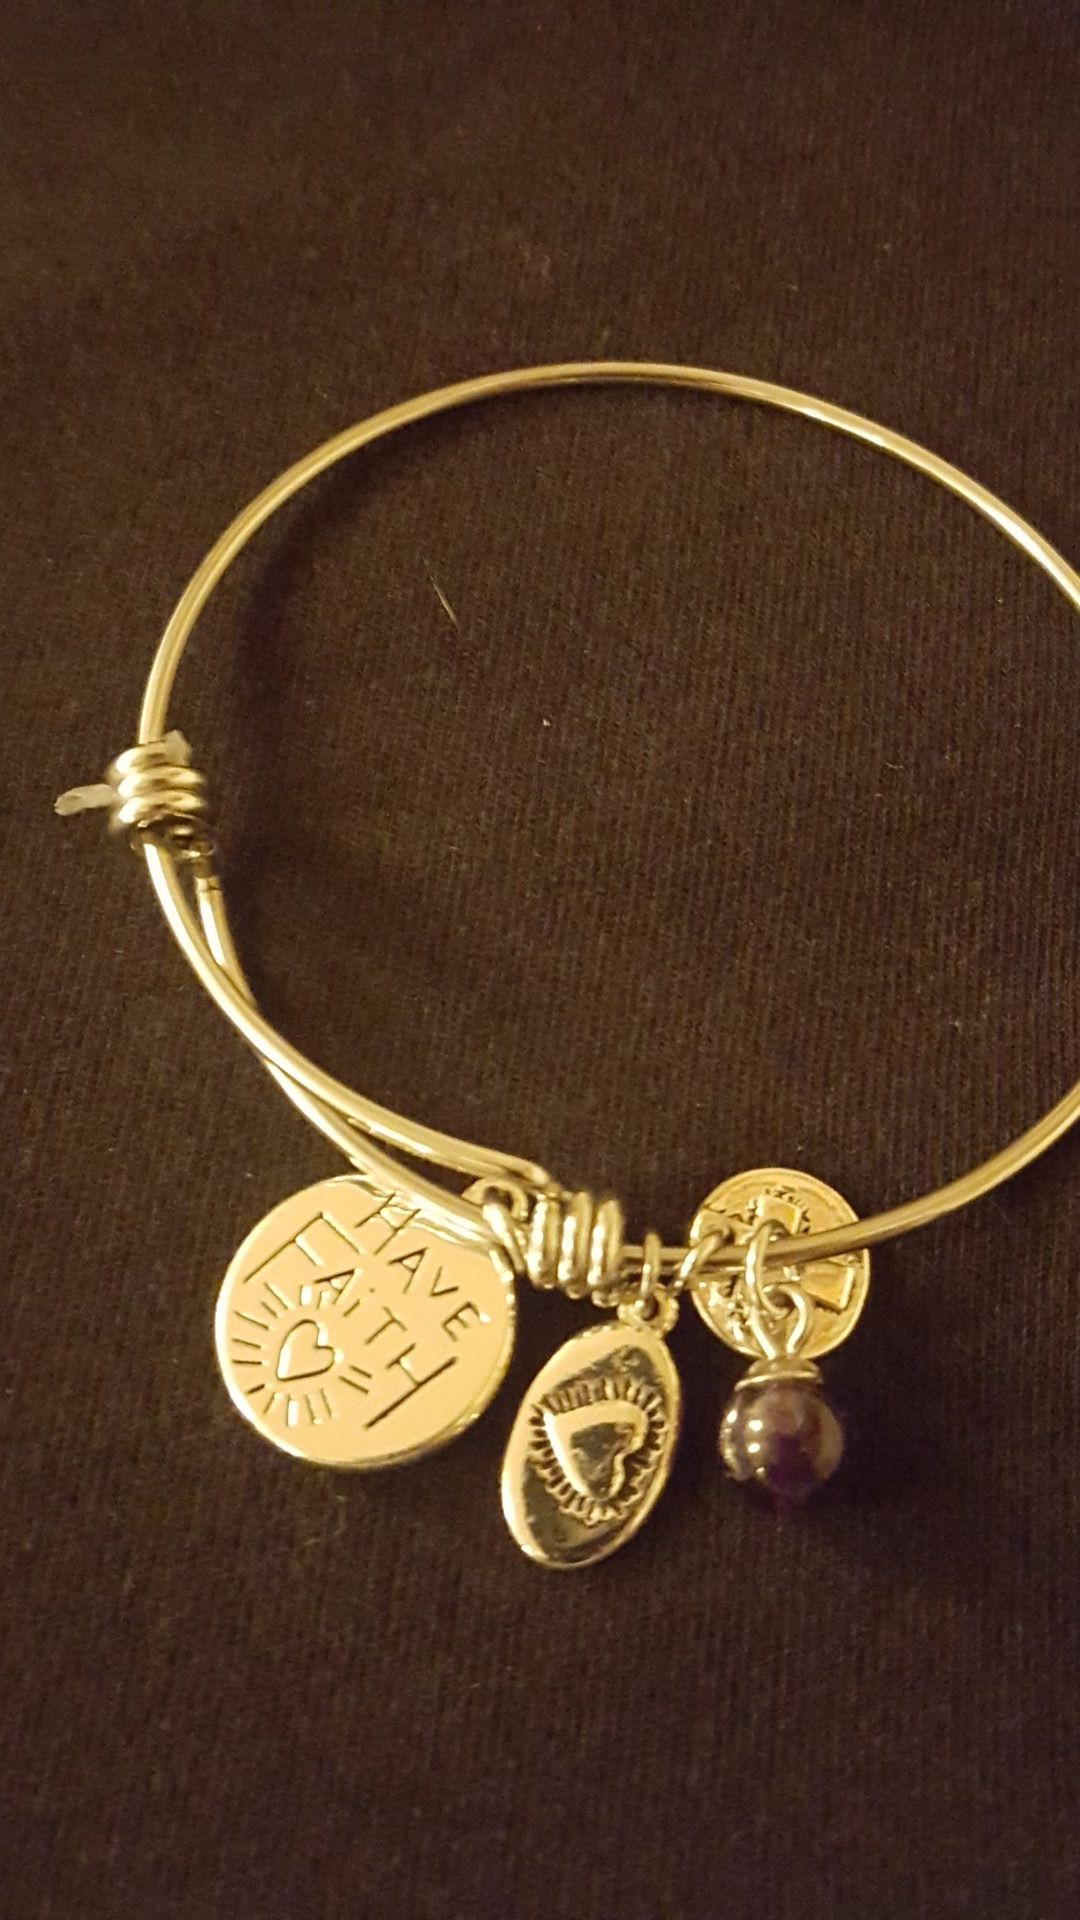 Silver Faith bracelet